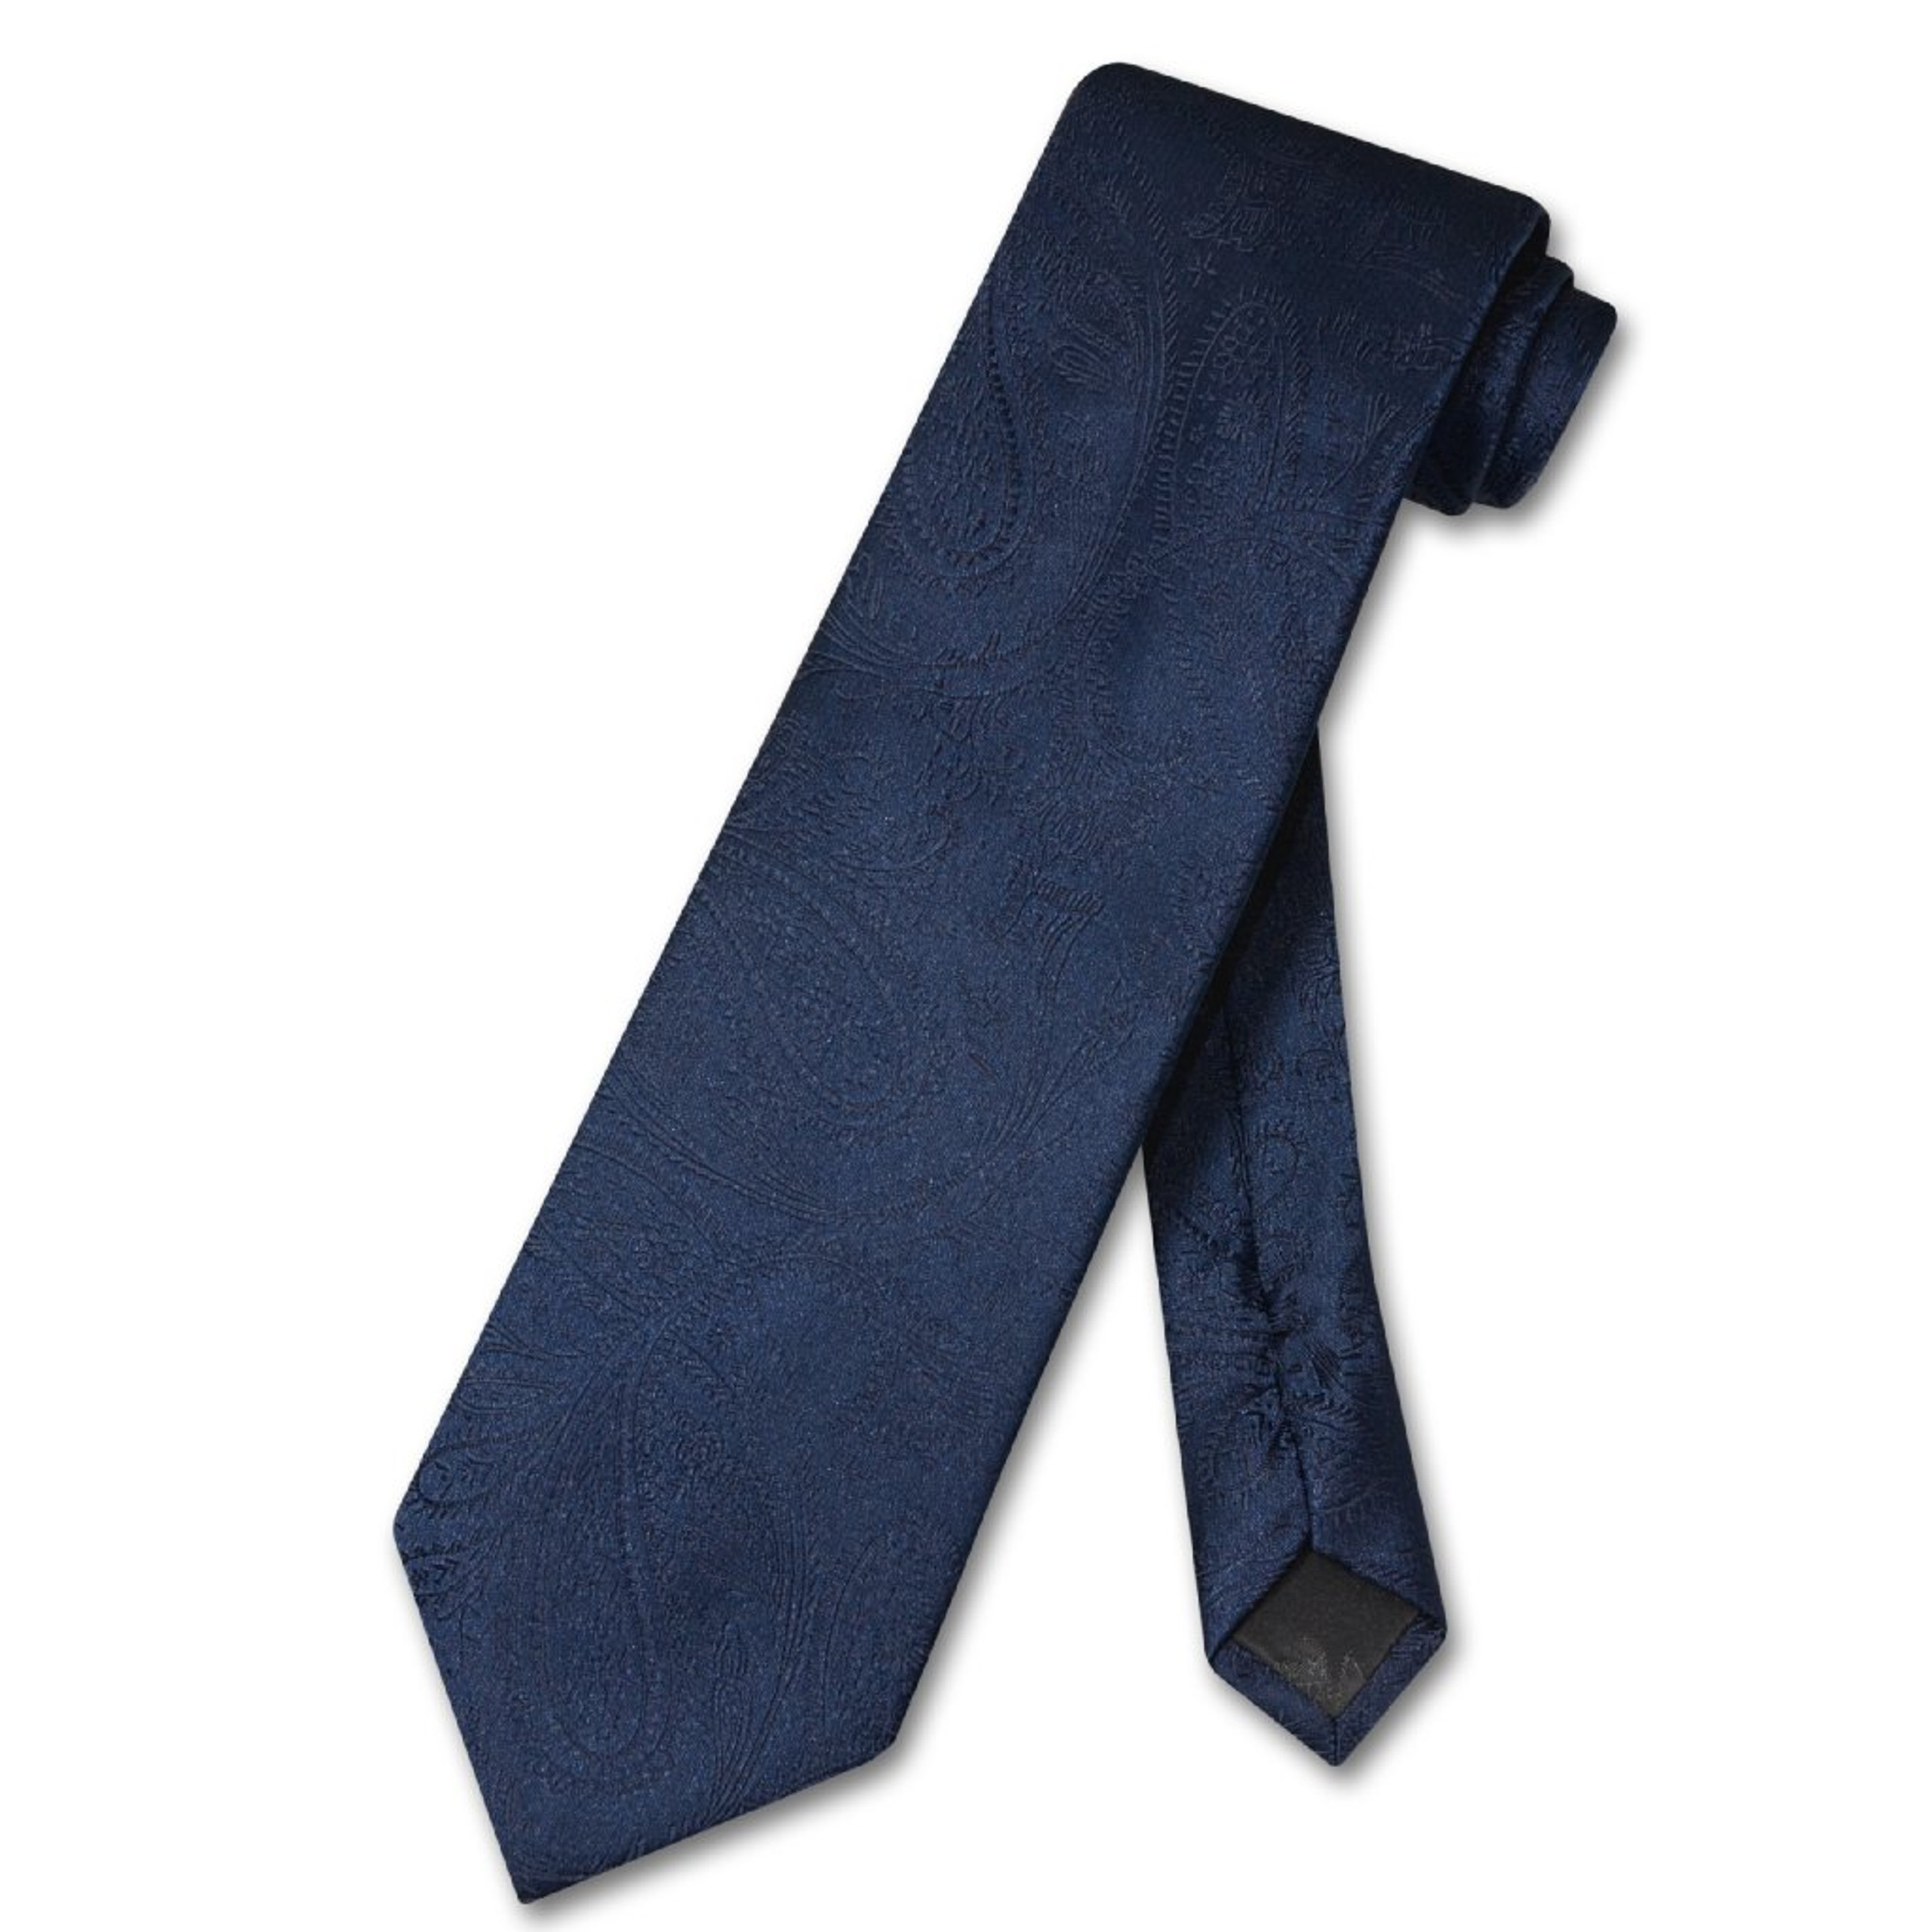 Vesuvio Napoli NeckTie Navy Blue Color Paisley Design Mens Neck Tie